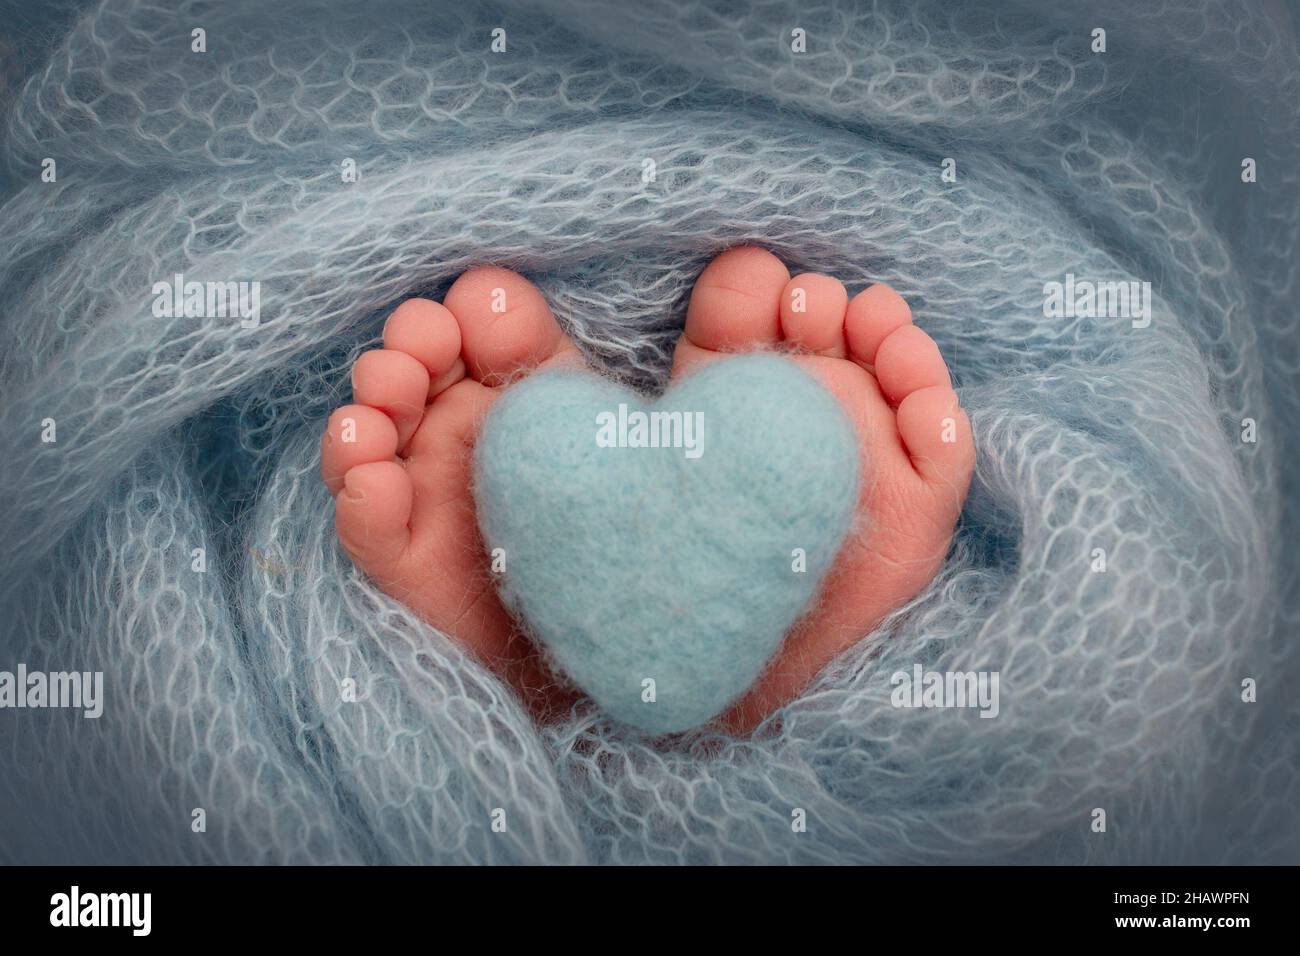 Die winzigen Füße eines Neugeborenen. Weiche Füße eines Neugeborenen in einer blauen Decke. Stockfoto